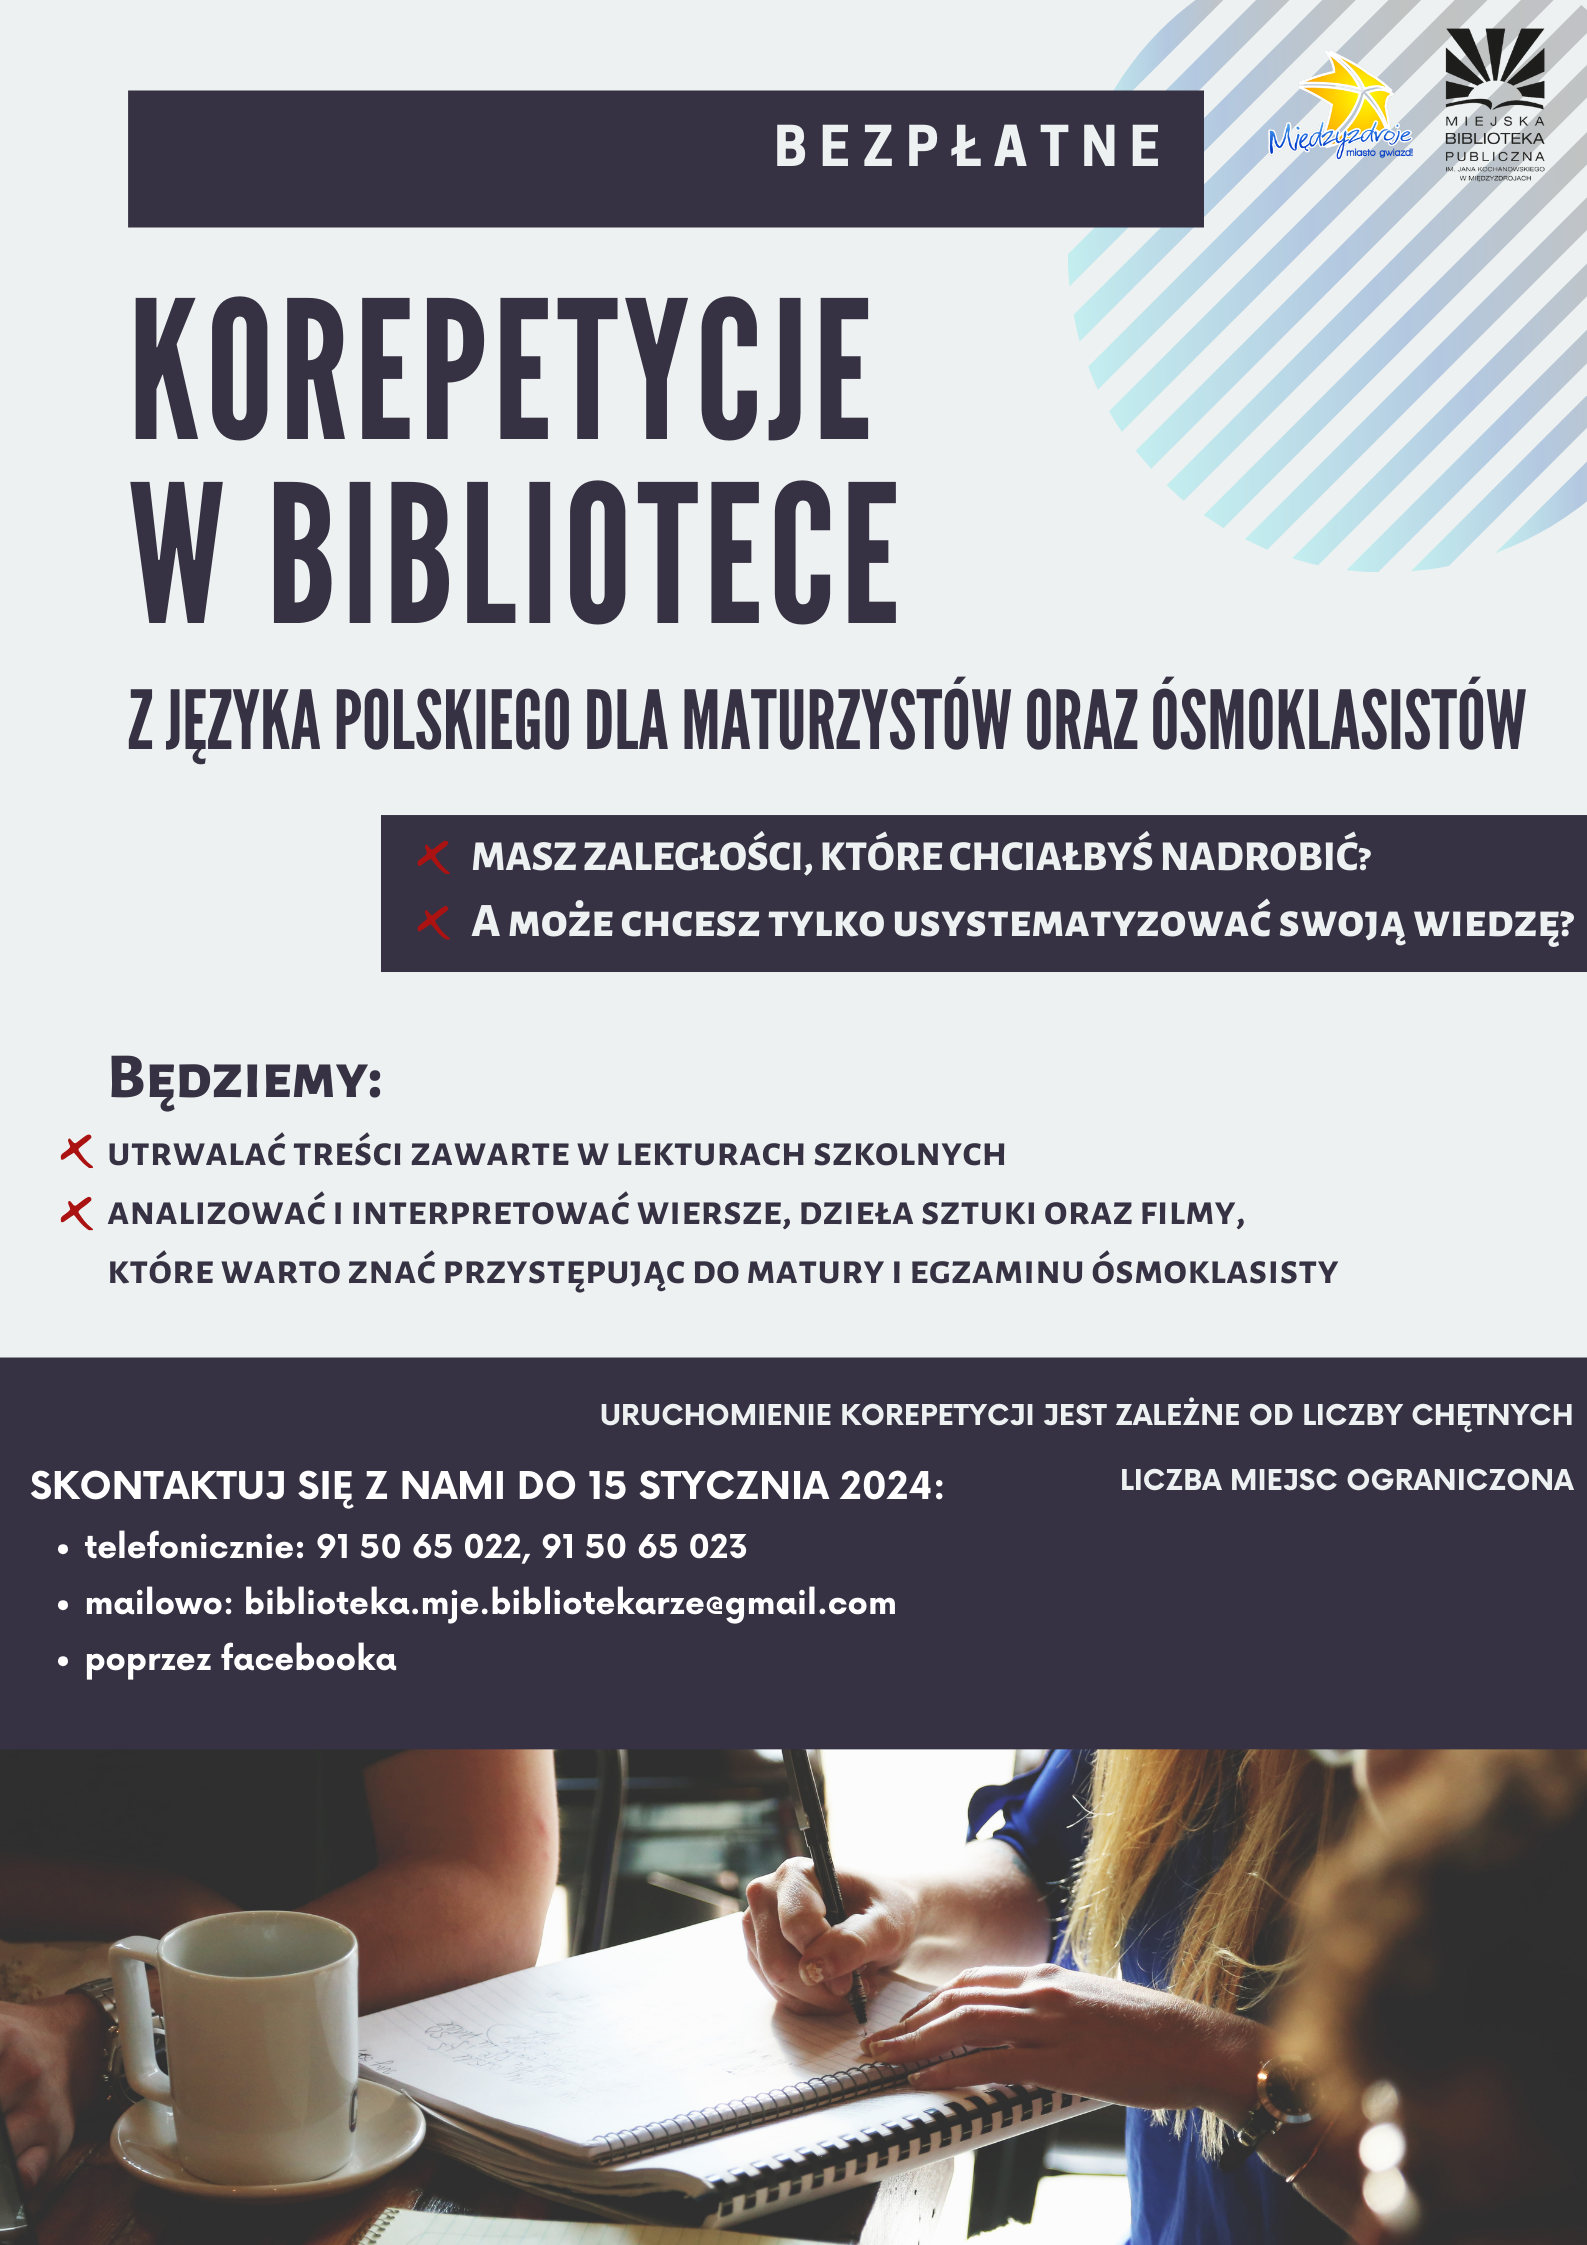 Bezpłatne korepetycje z języka polskiego w międzyzdrojskiej bibliotece